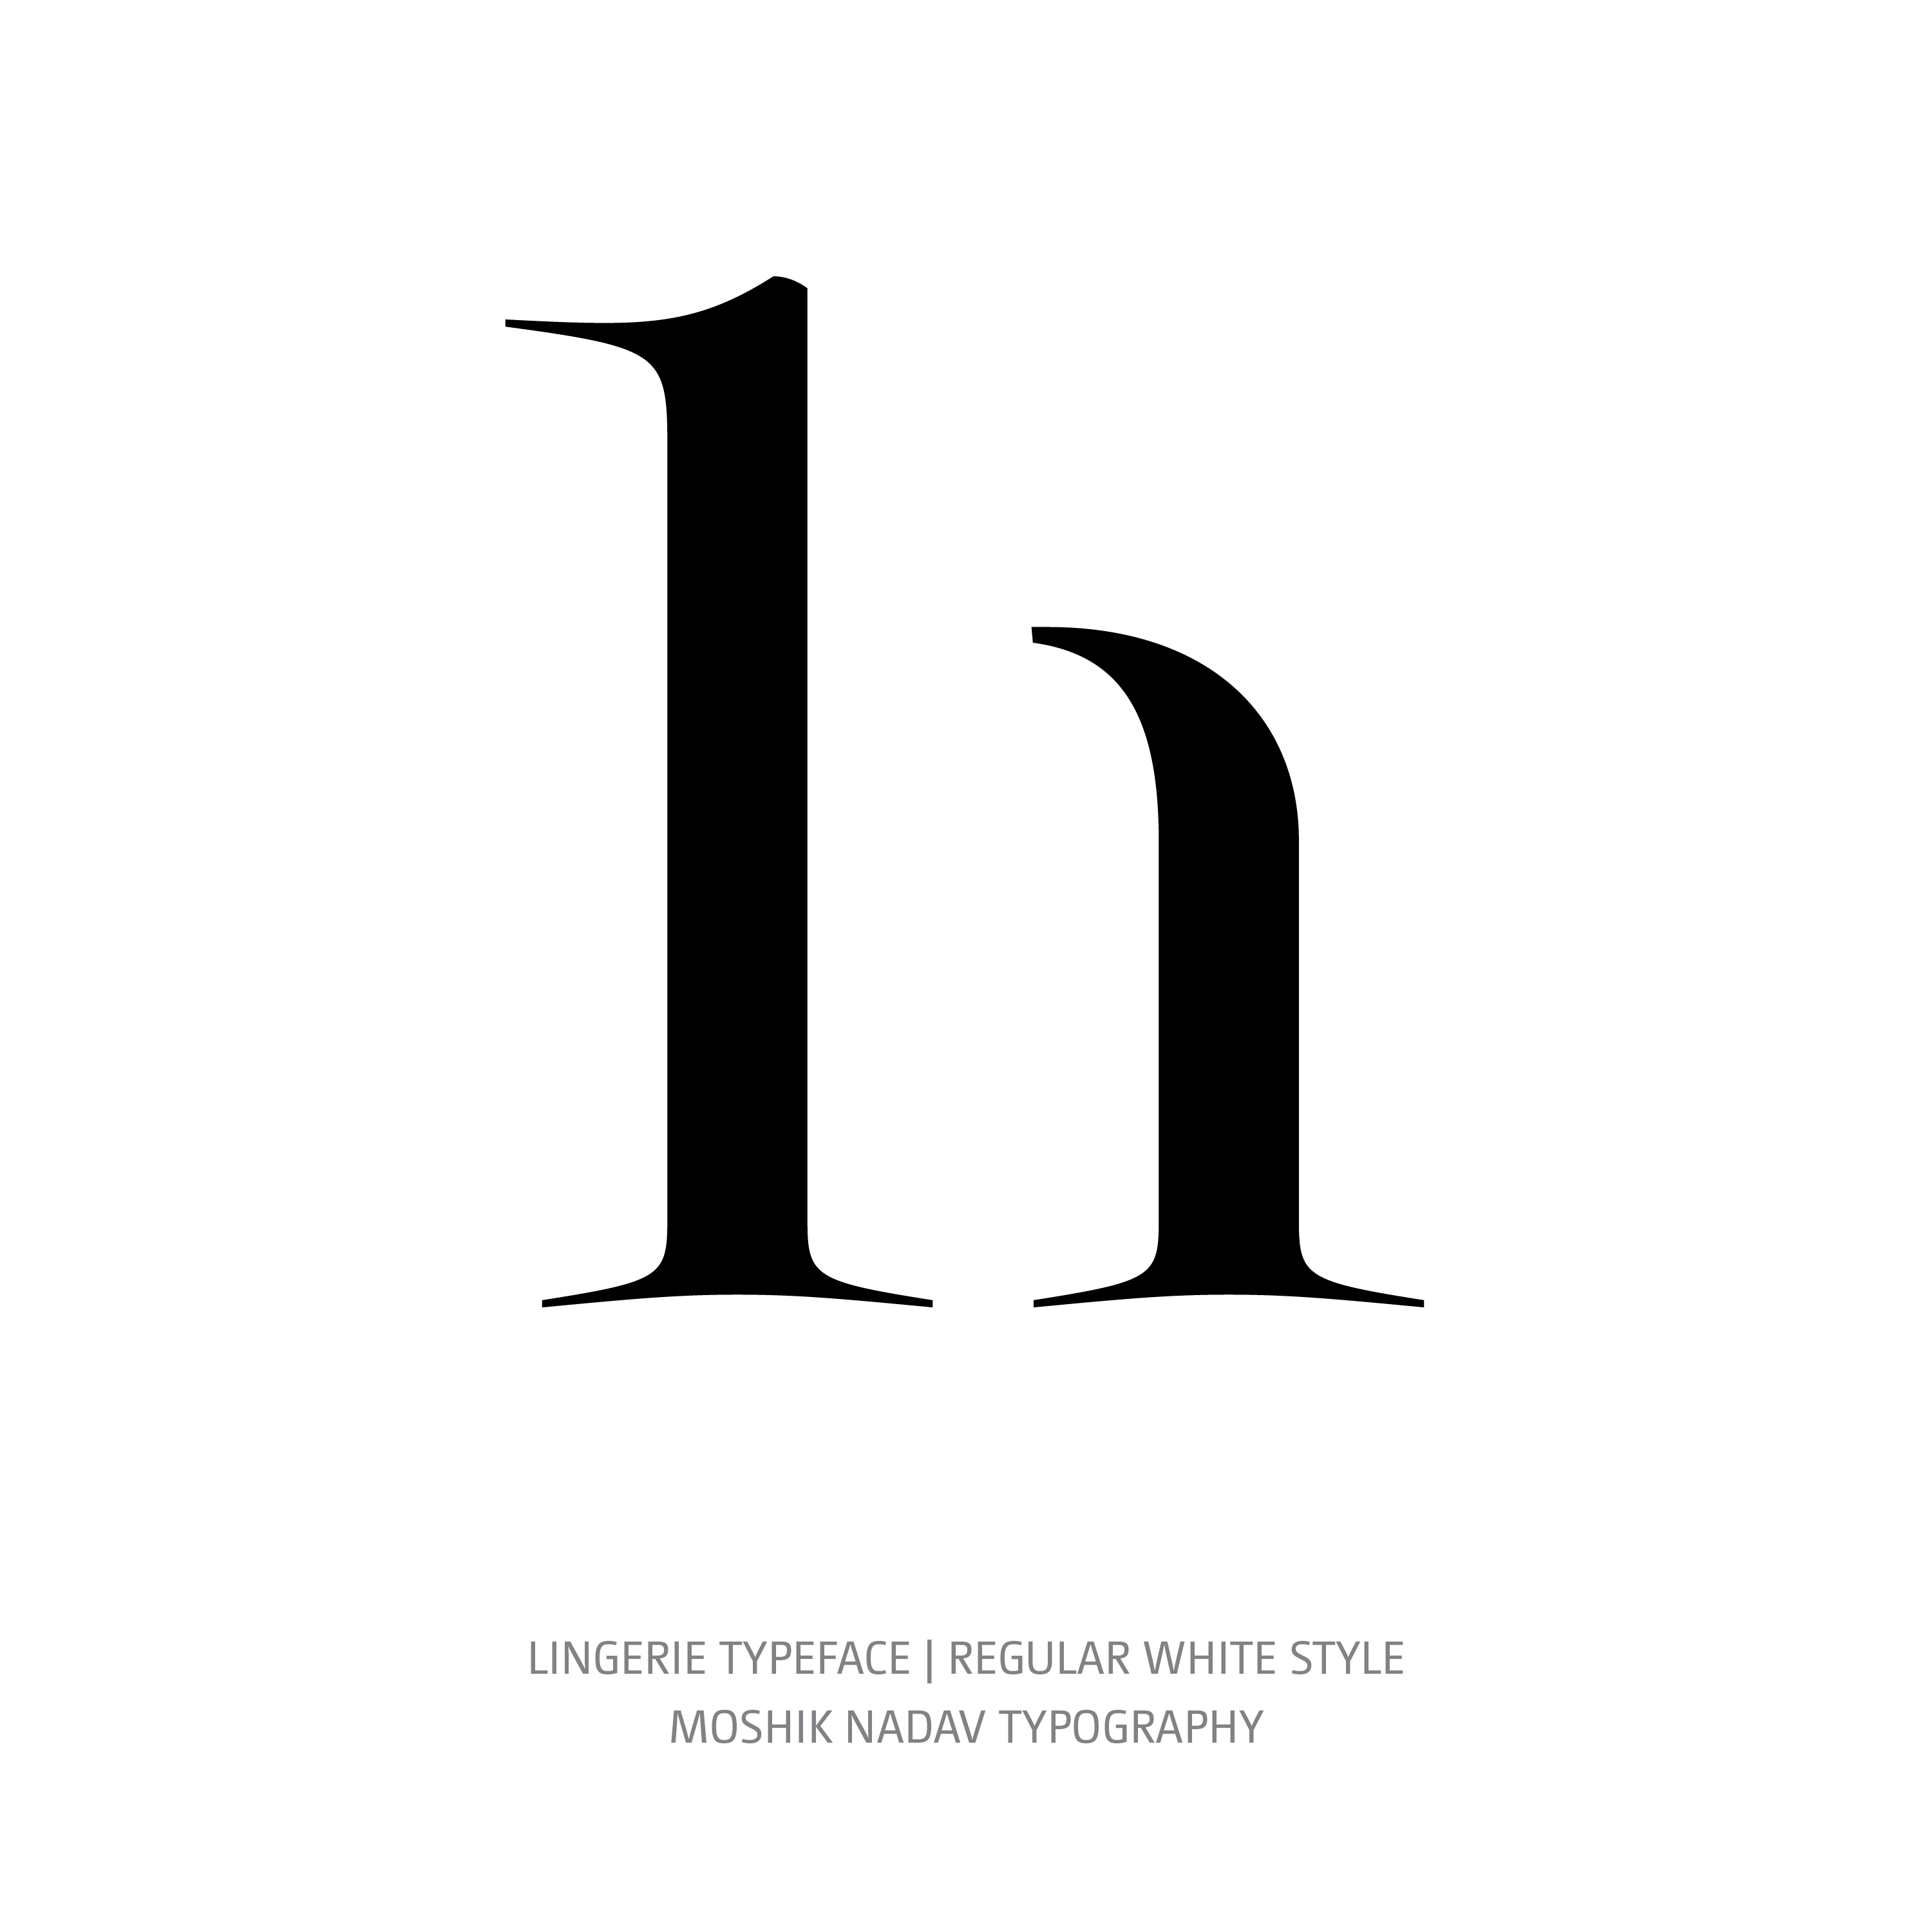 Lingerie Typeface Regular White h